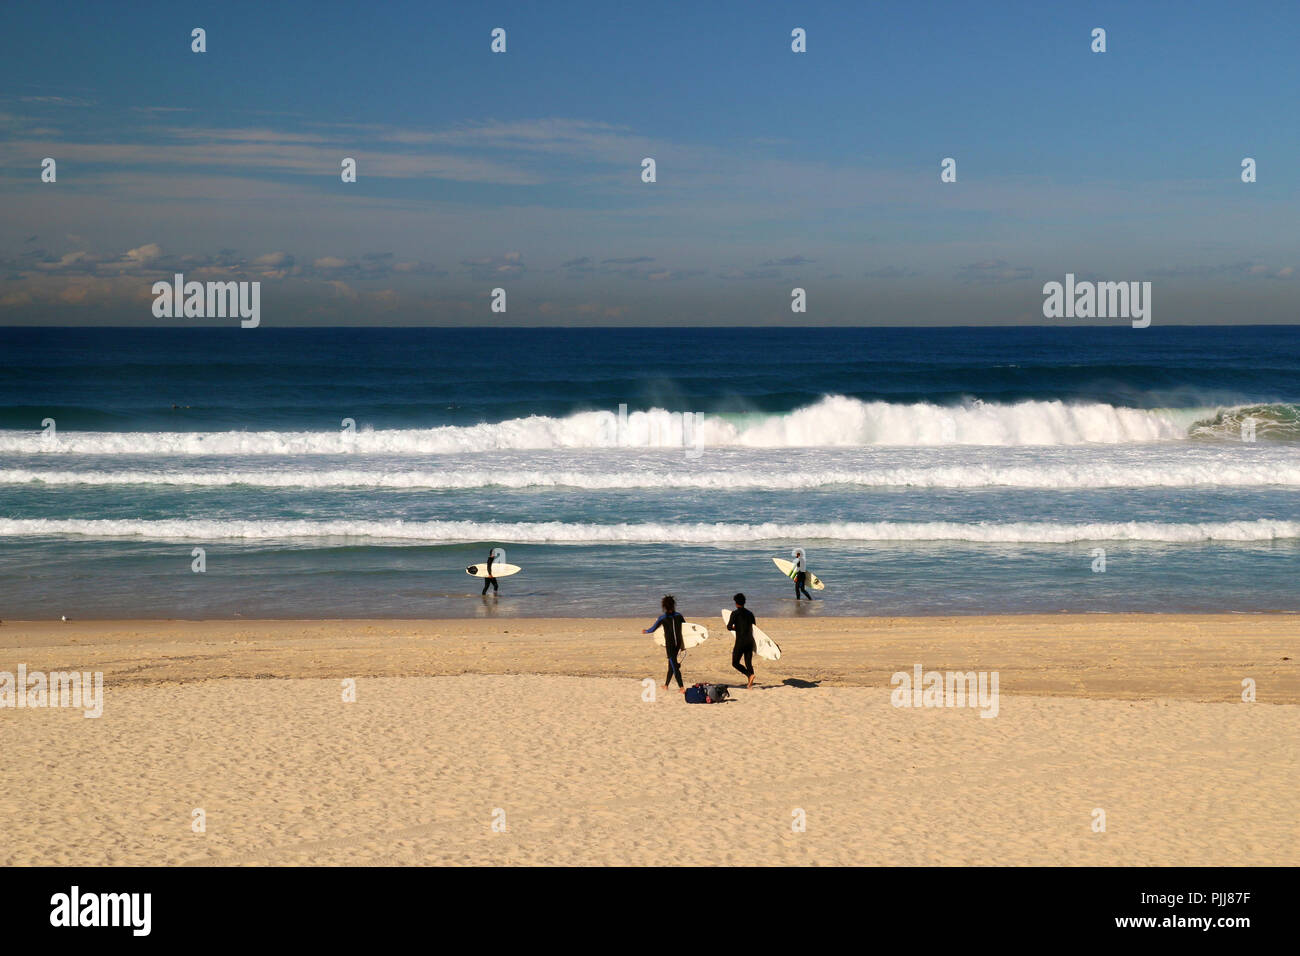 Deep Blue Pacific Ocean Beach Szene mit riesigen Wellen und Surfer zu Fuß am Strand und Surfen, Bondi Beach in Sydney/Australien Stockfoto